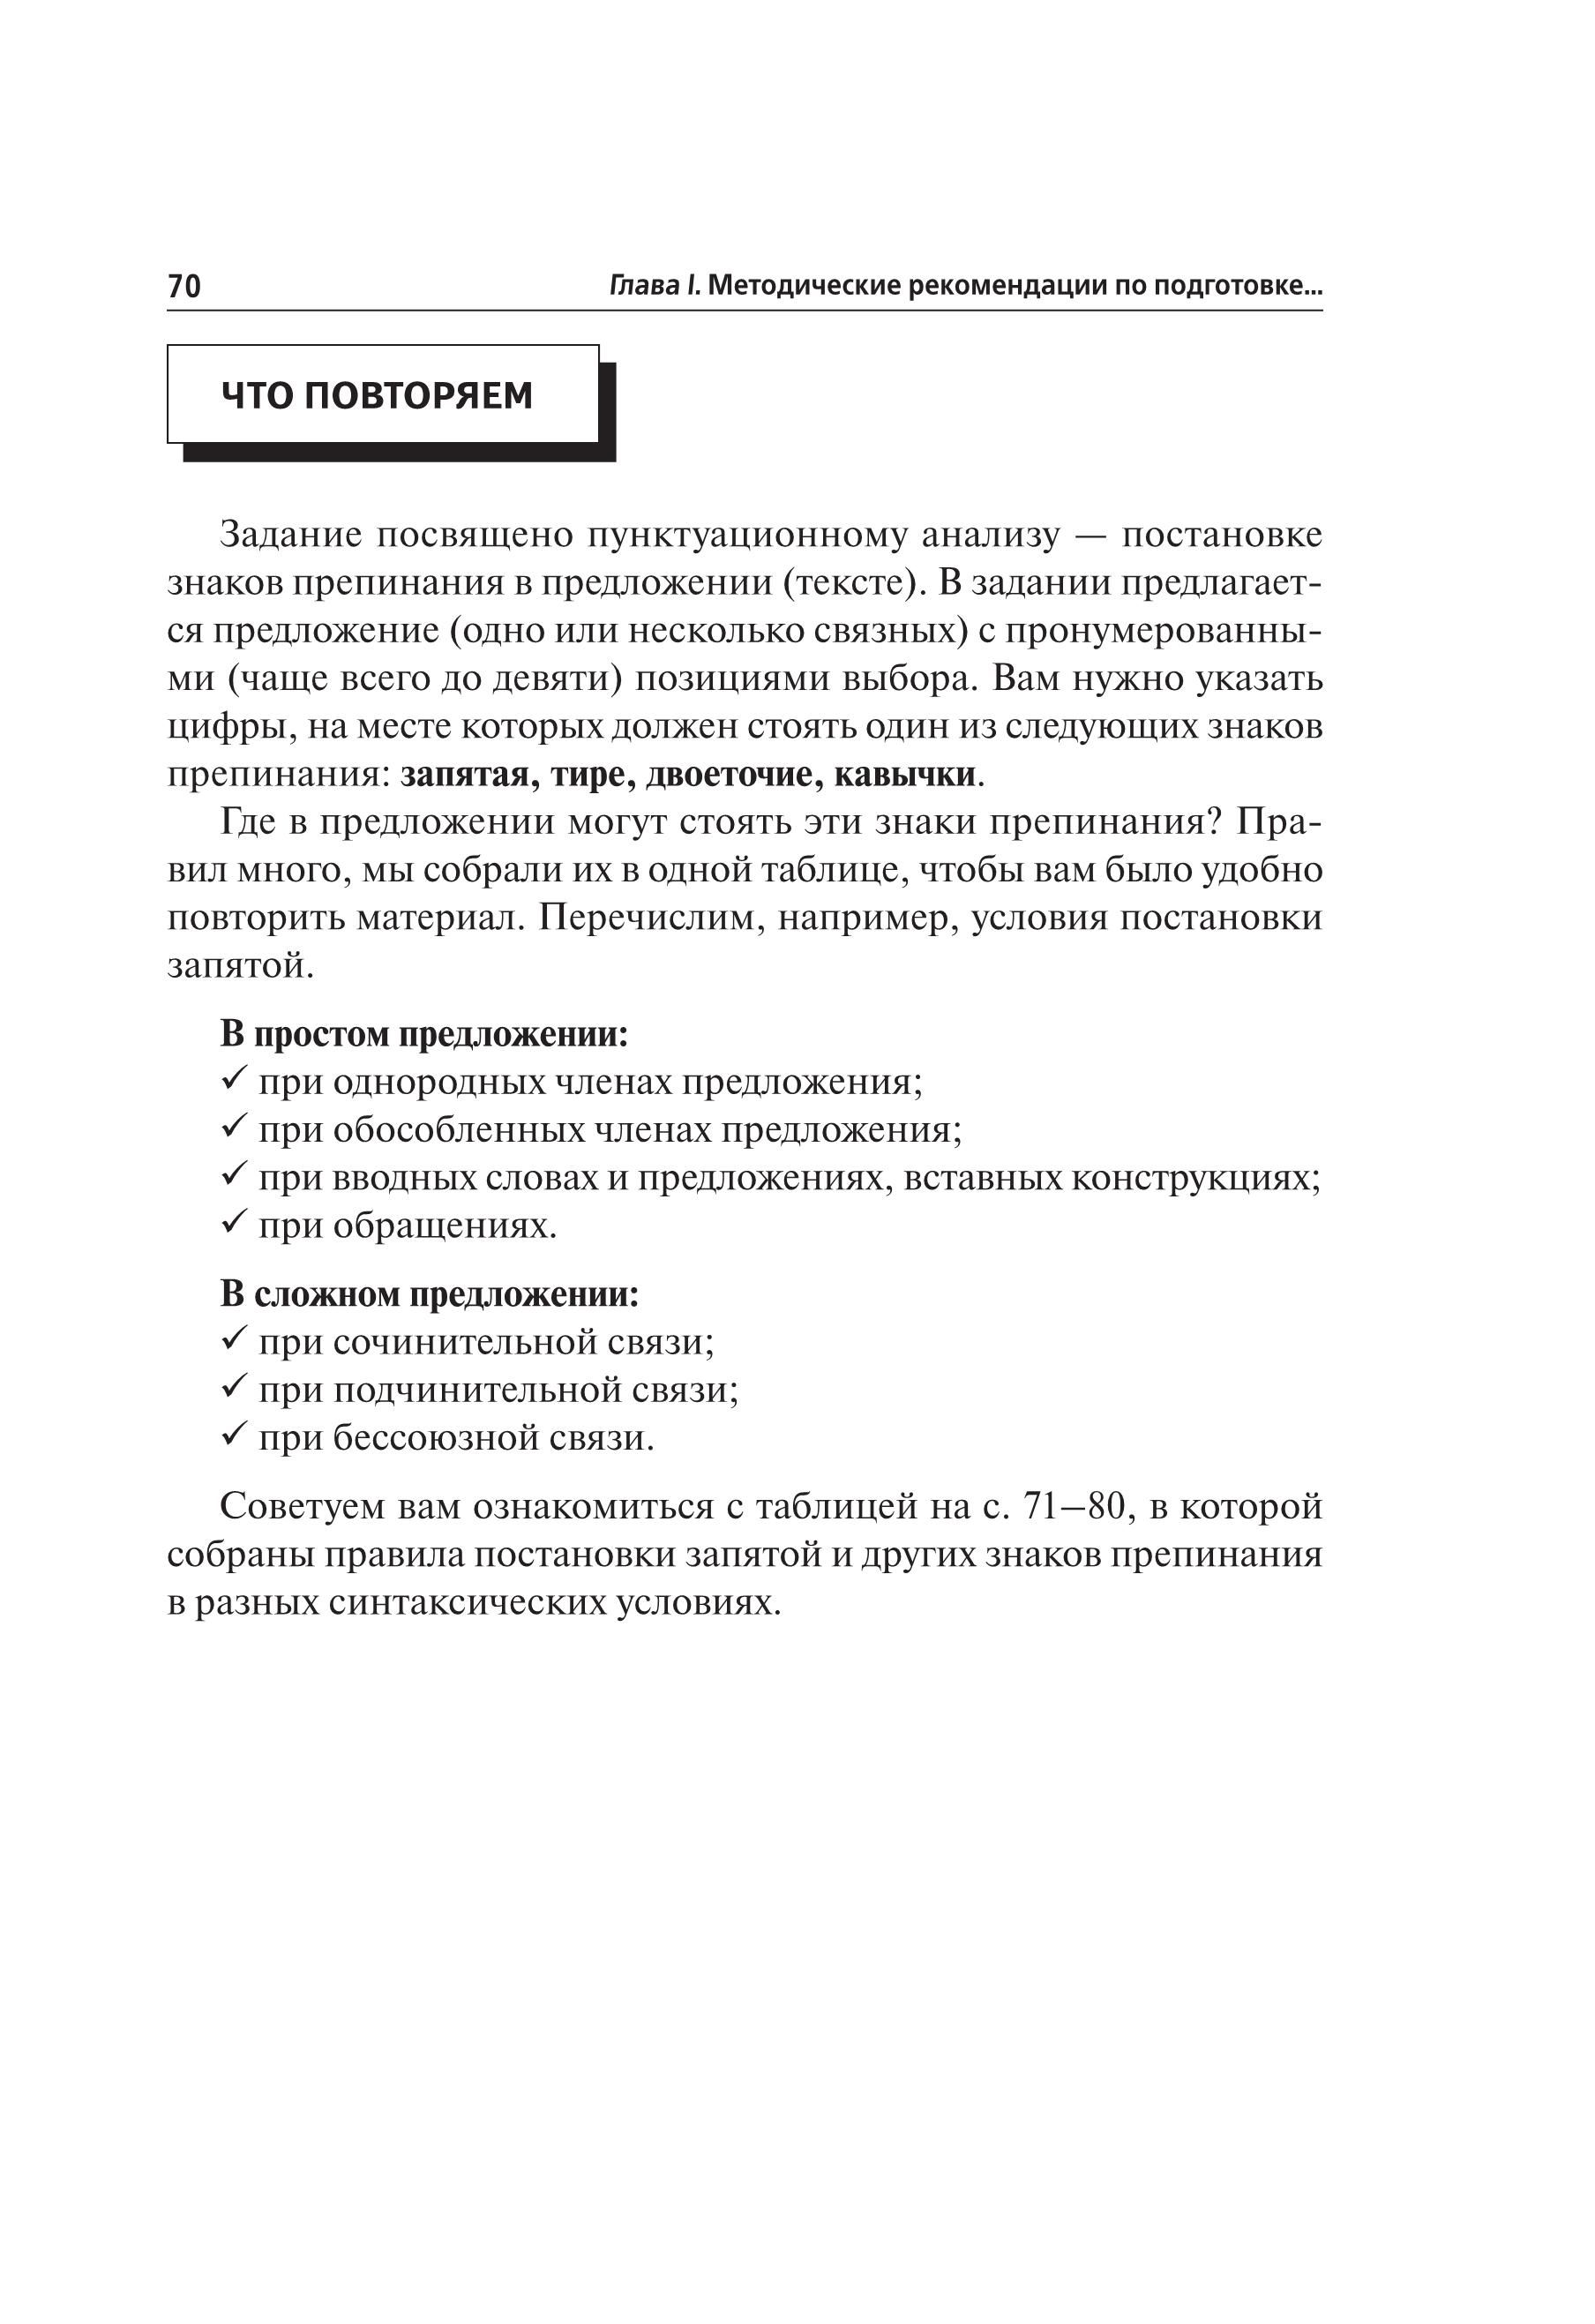 Русский язык. Подготовка к ОГЭ-2021. 9 класс. 30 тренировочных вариантов по демоверсии 2021 года